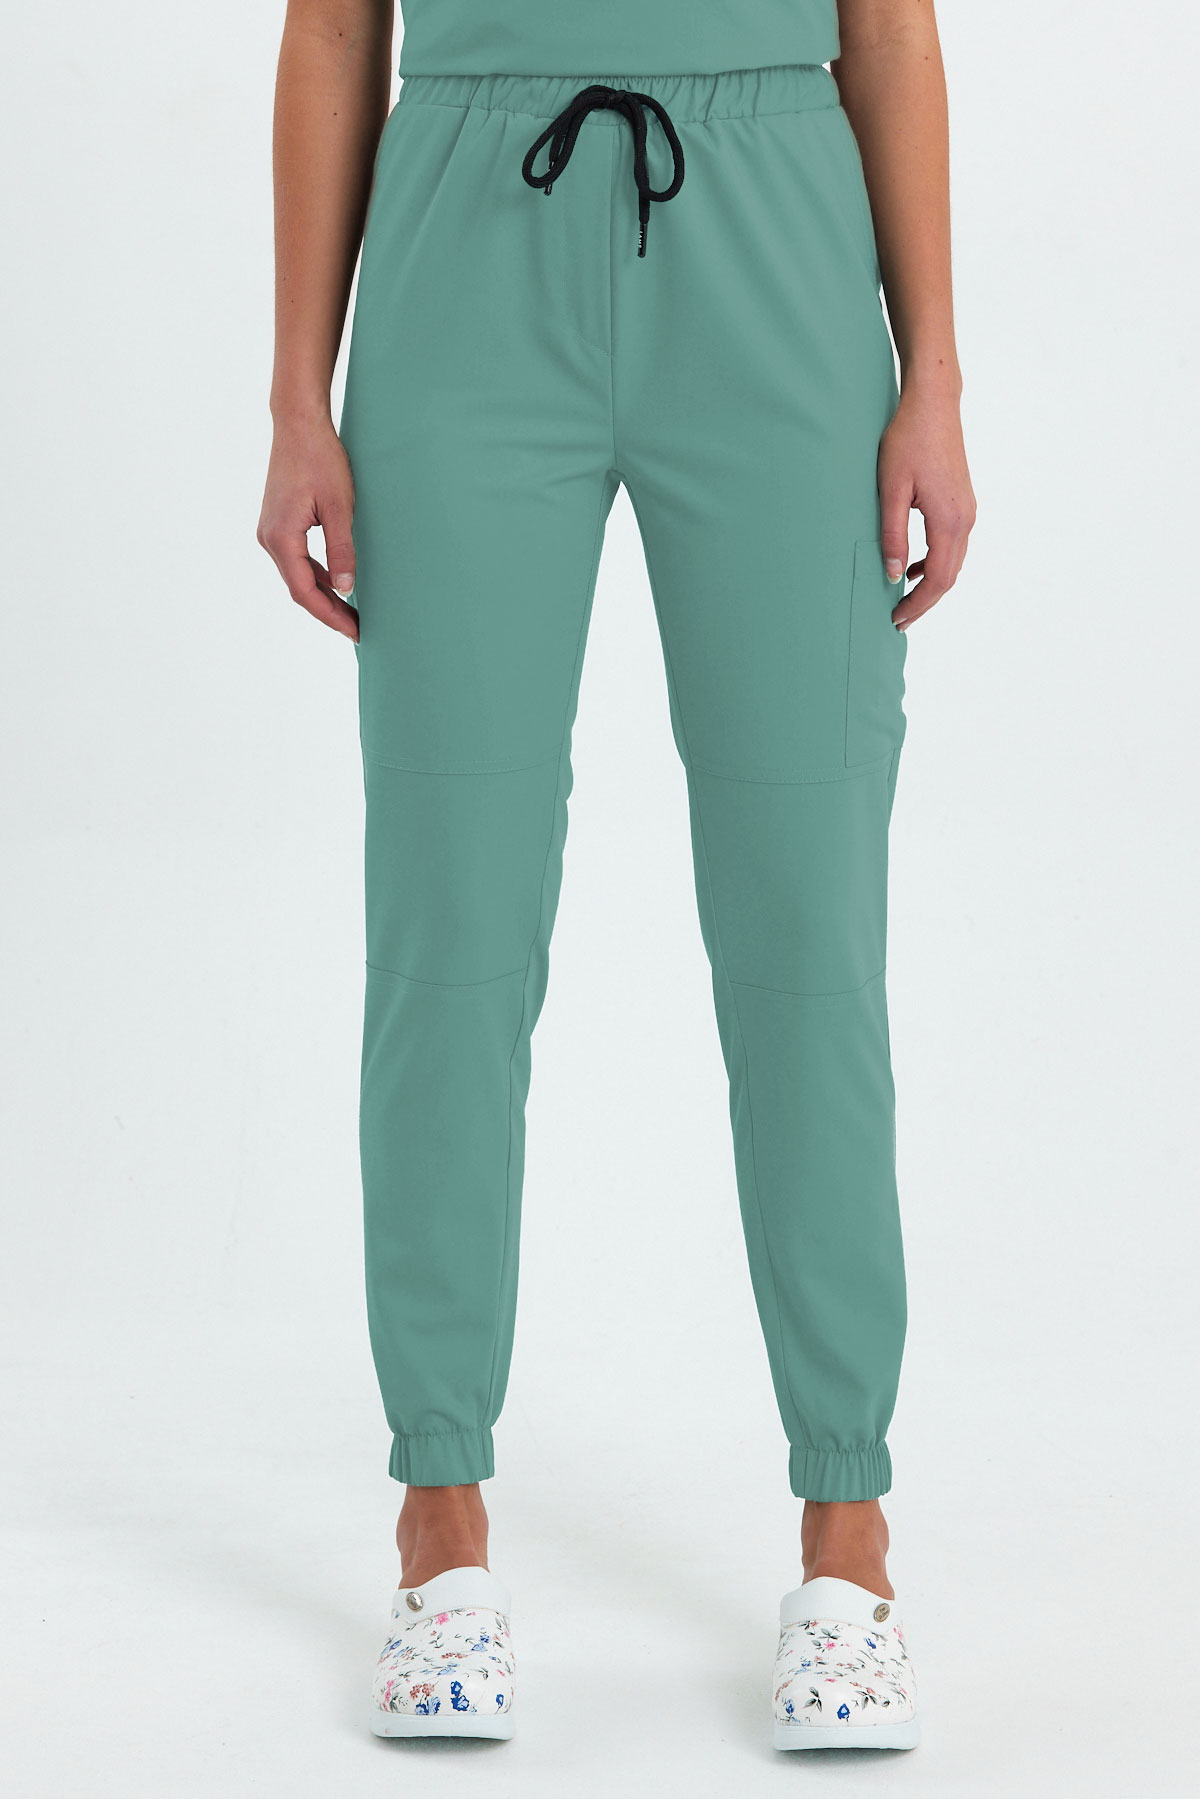 LAME 3005 Luxury Likralı Mint Yeşili Scrubs, Hemşire Forması Diz Ekli Kargo Cepli Paça Lastikli Pantolon